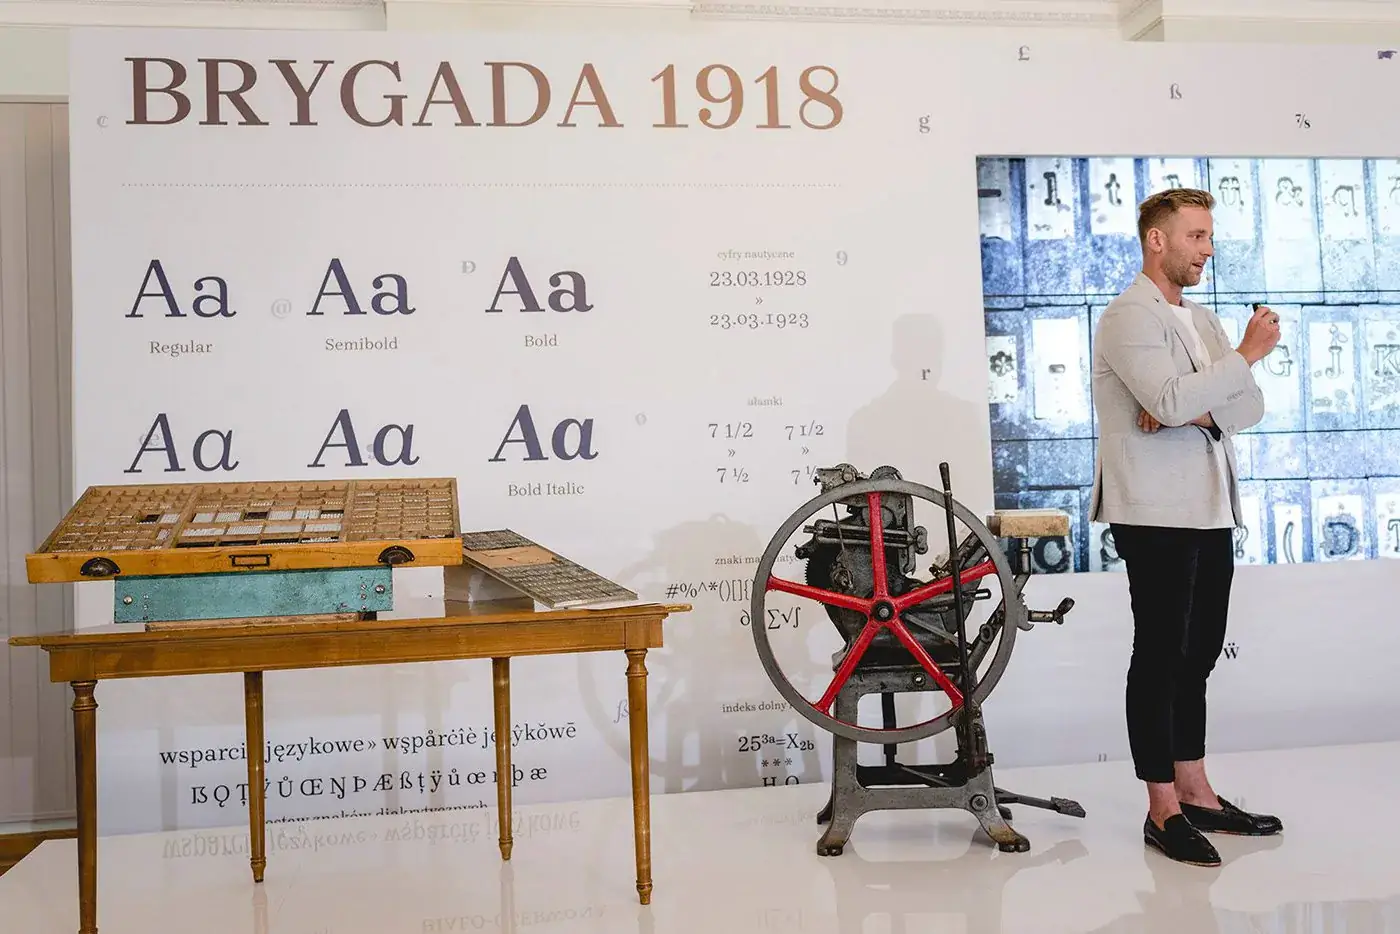 Шрифт Brygada 1918 Cyrillic